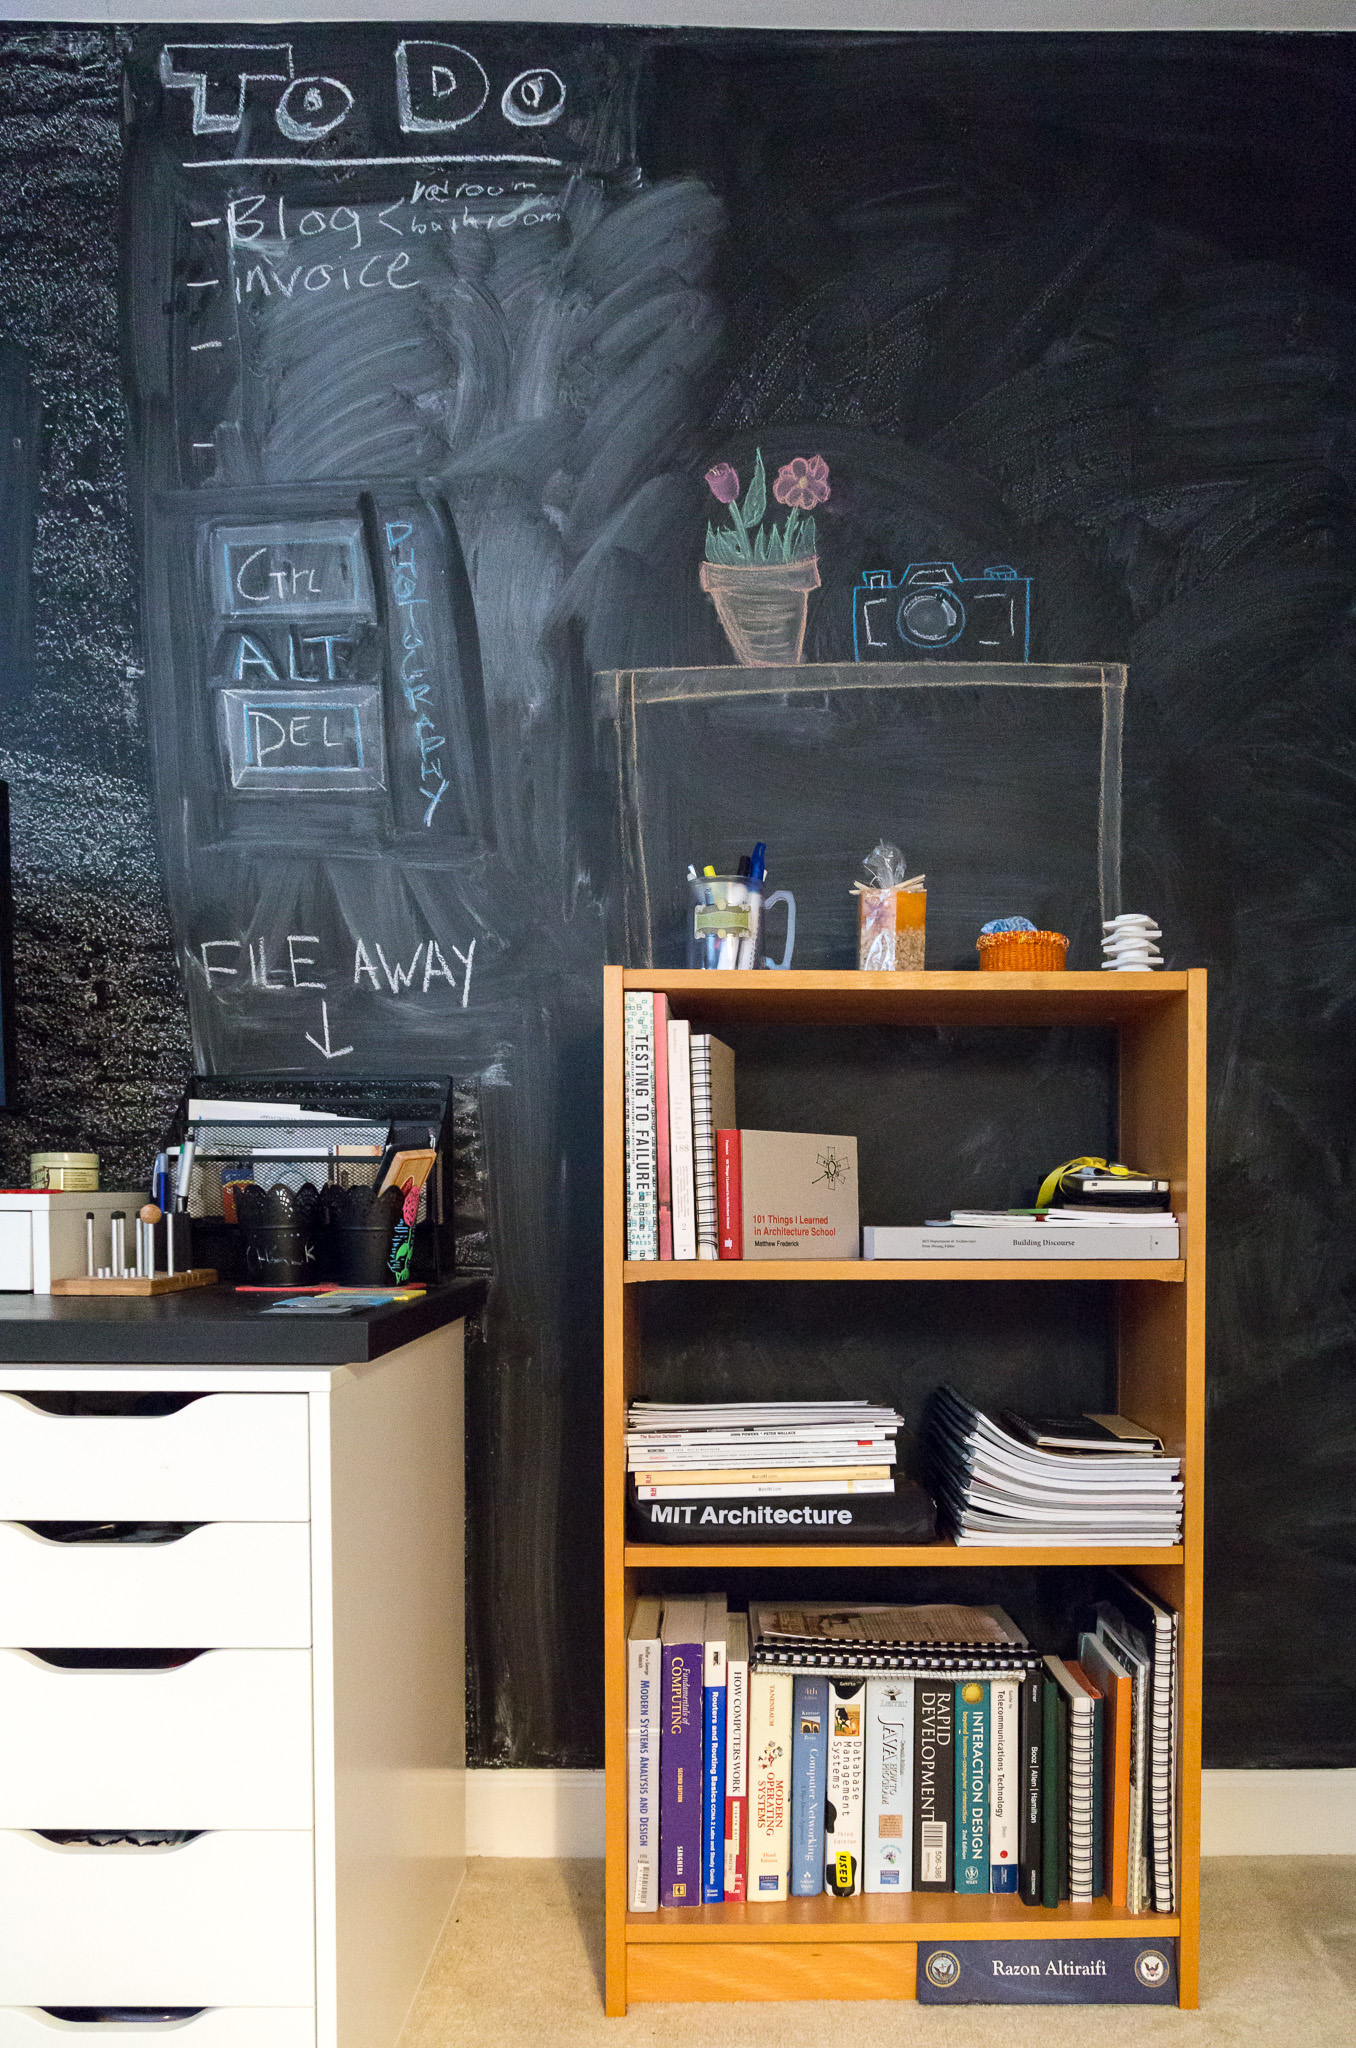 The Chalkboard Wall Workspace